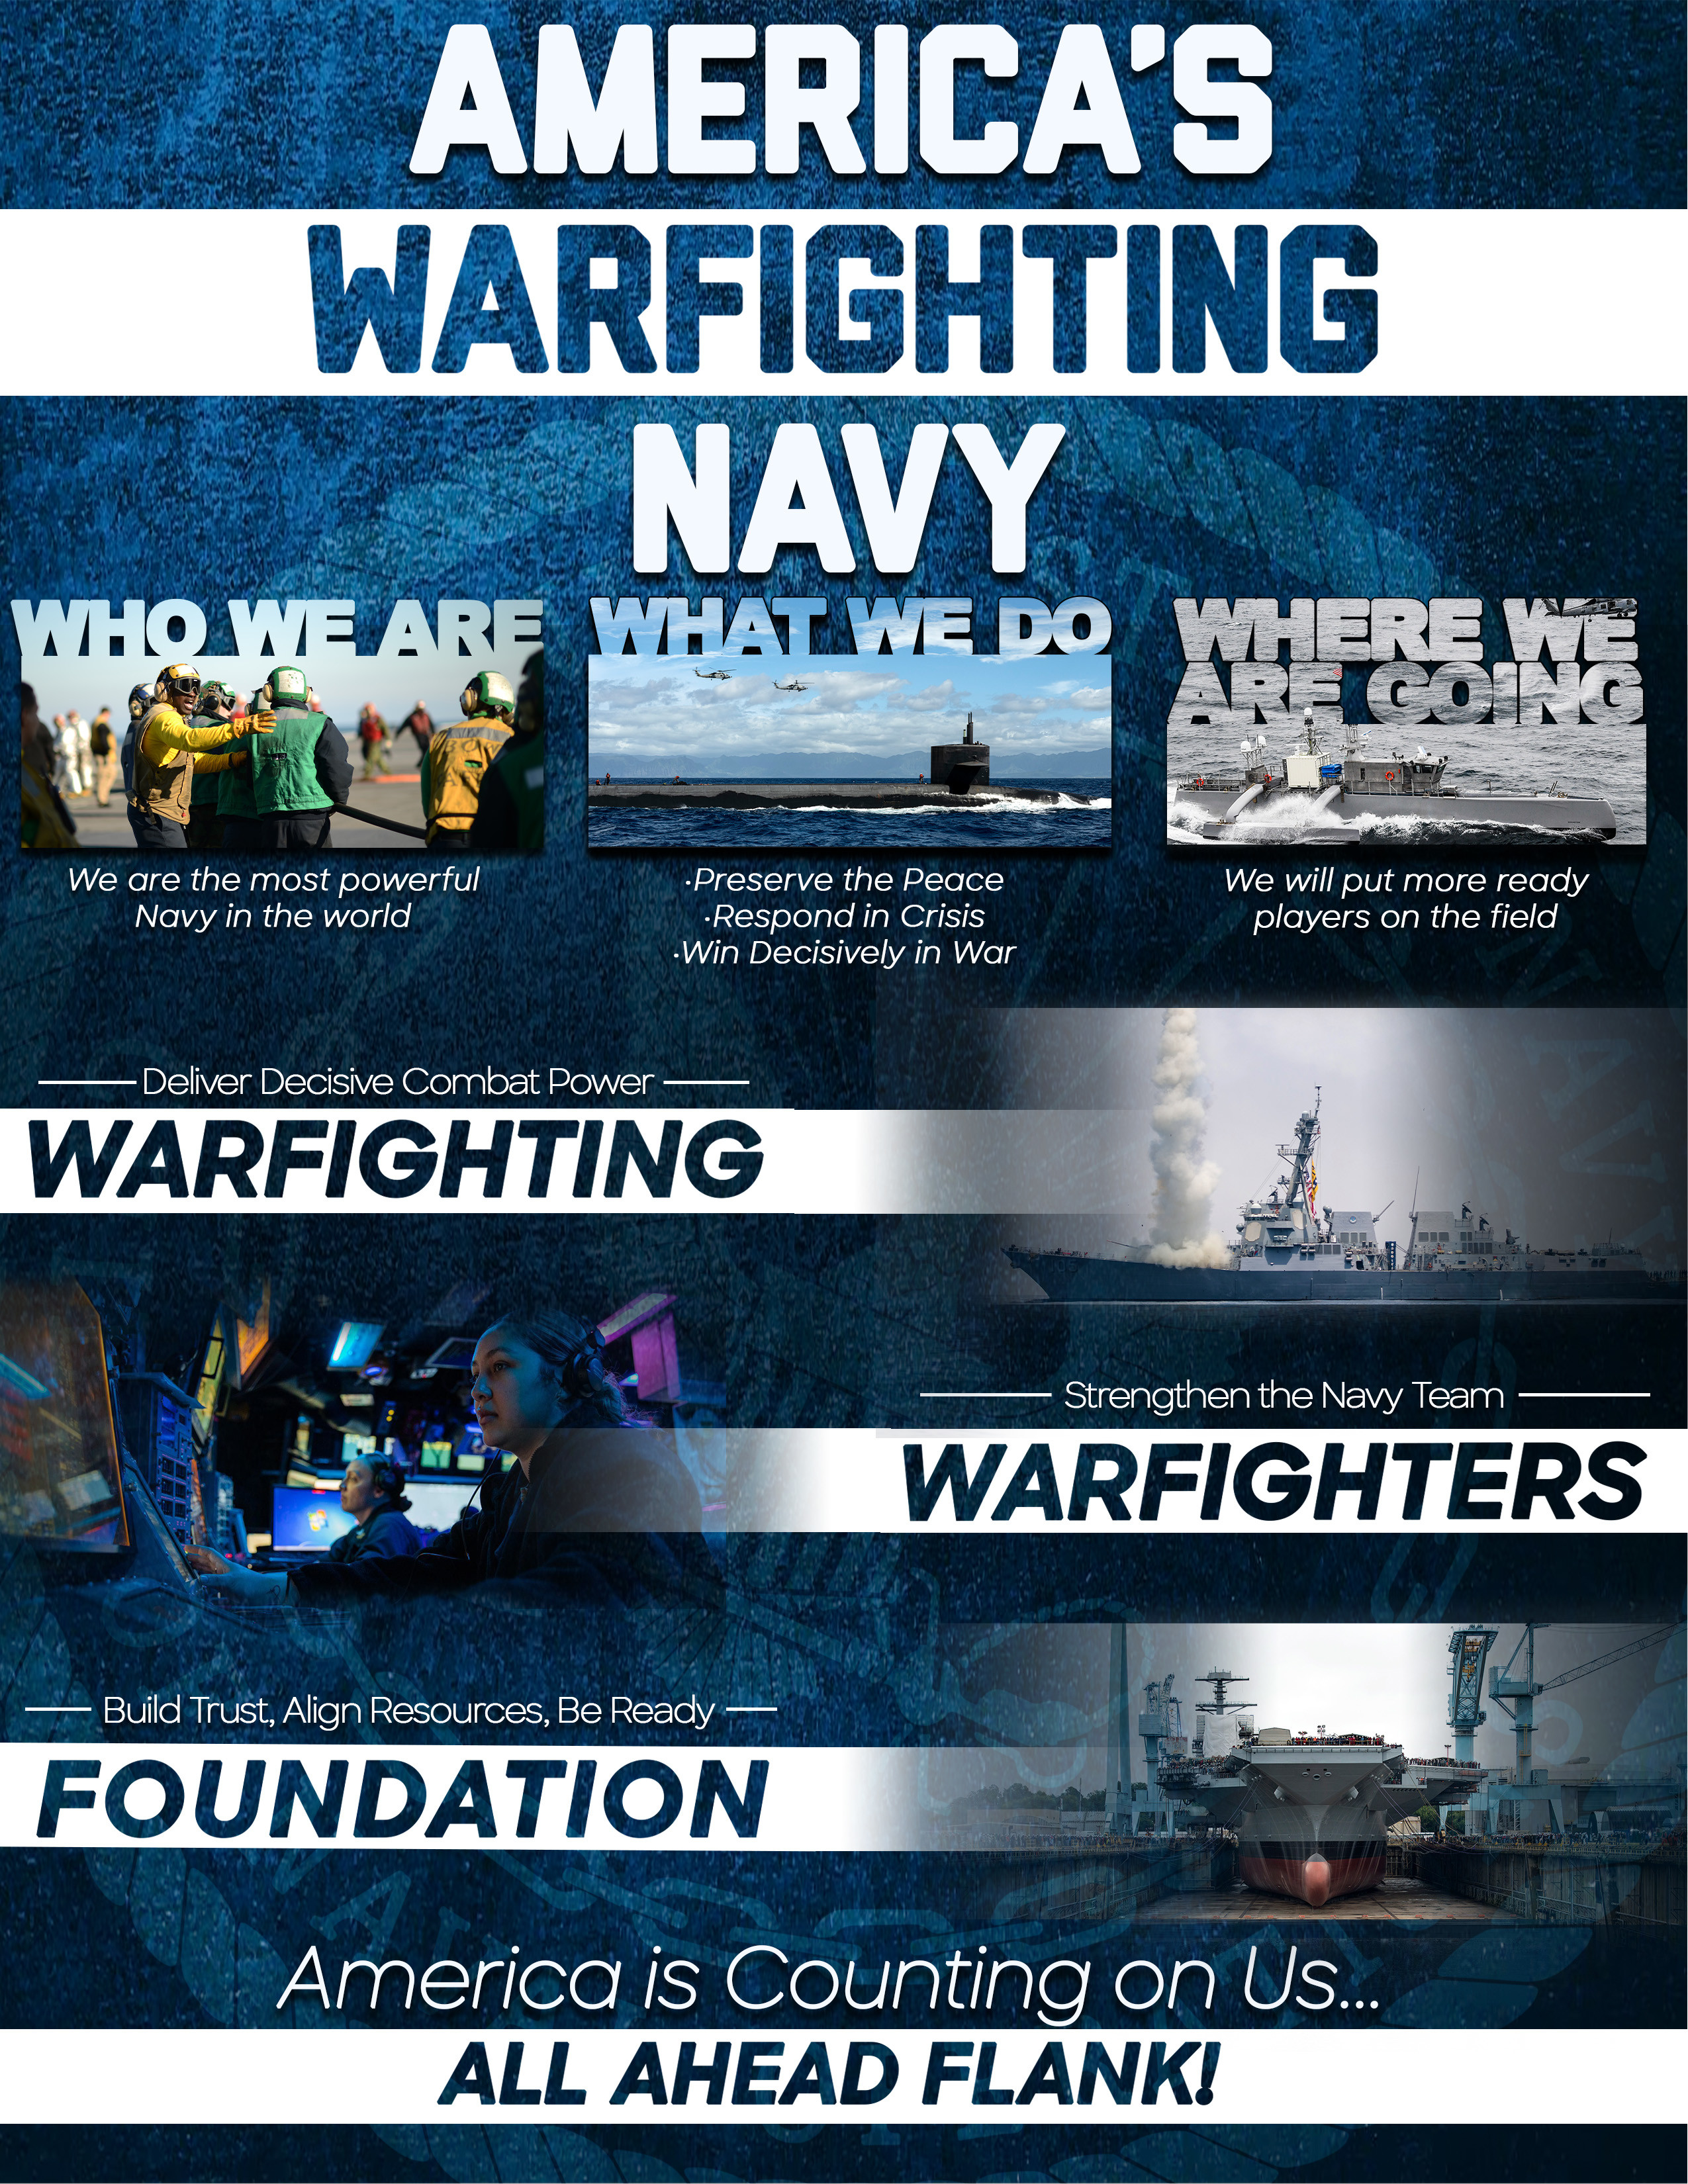 America's Warfighting Navy